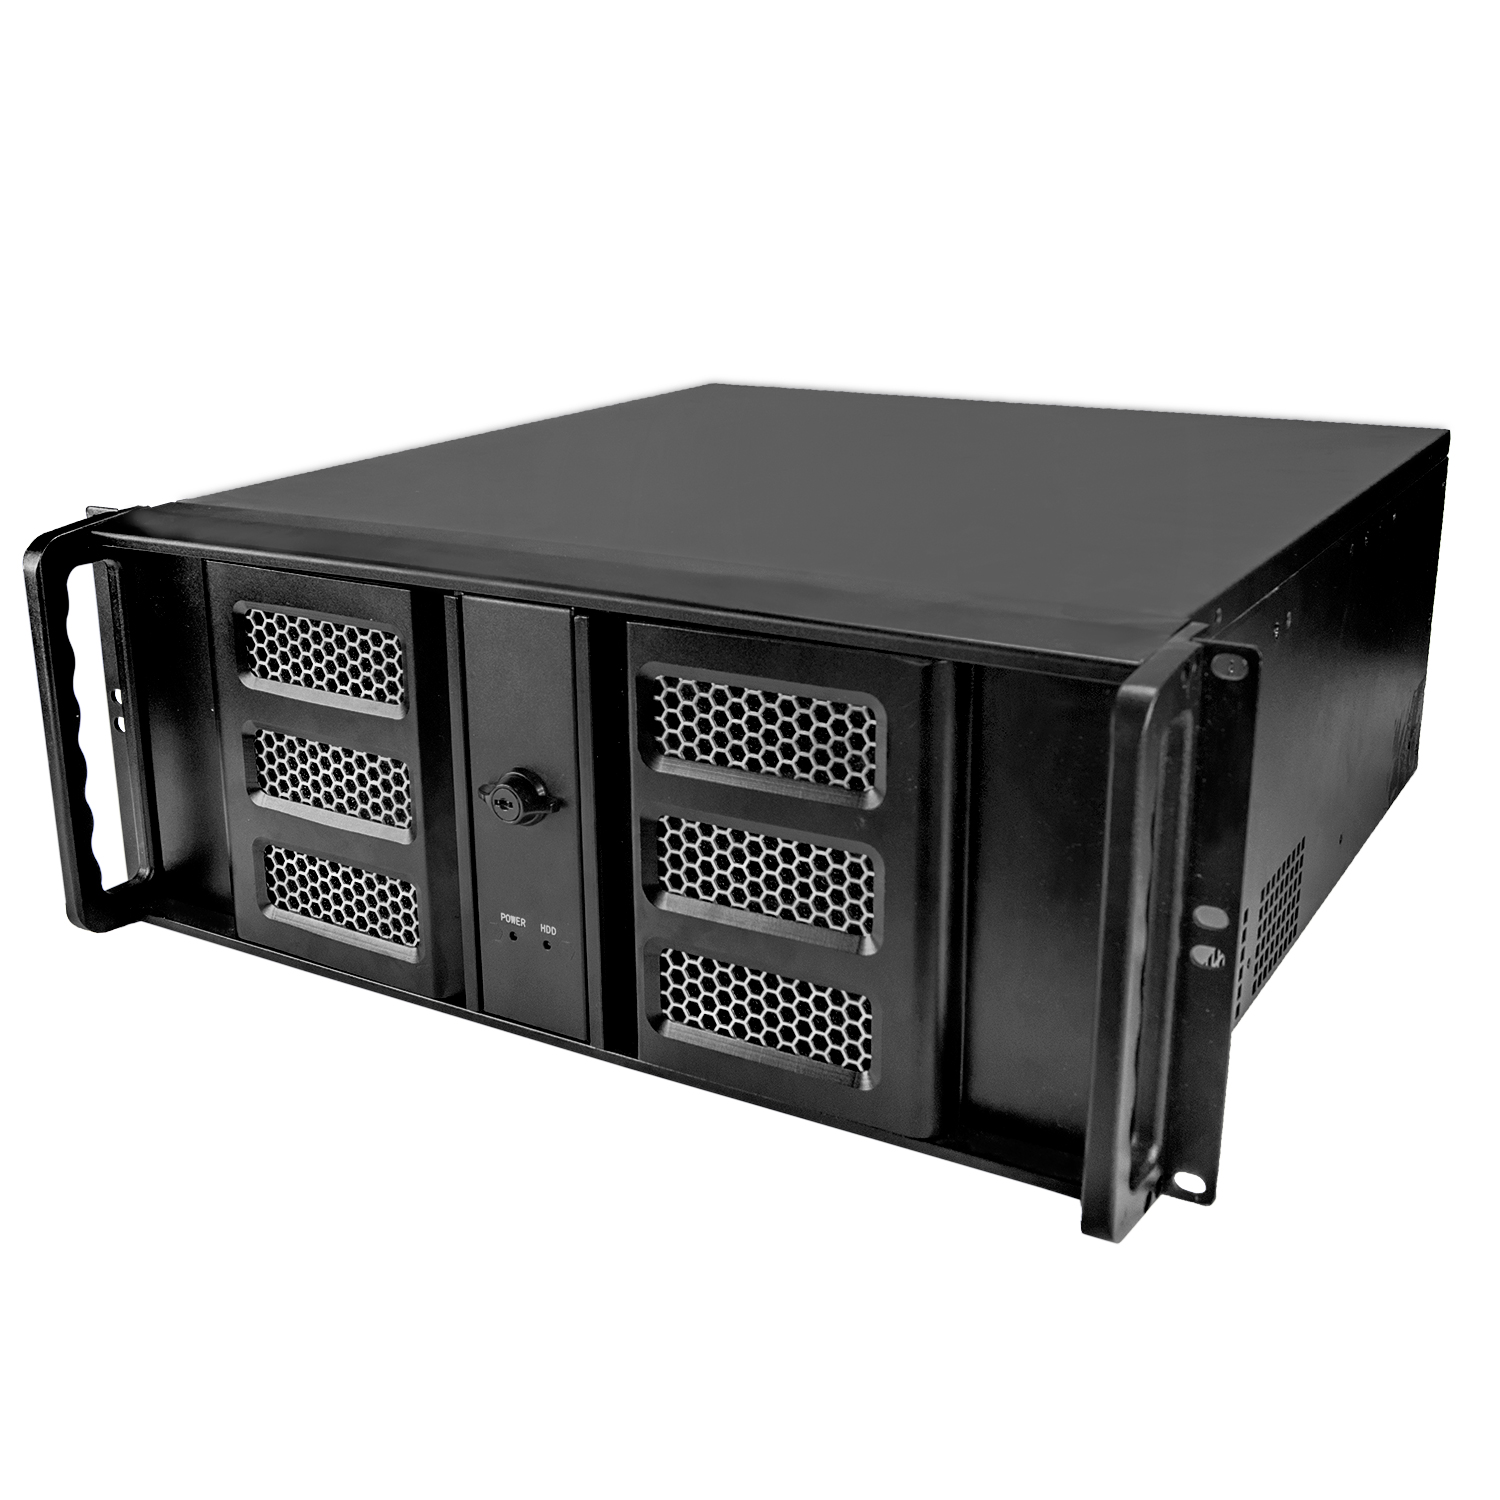 Серверный корпус 4U NR-N436D 1000Вт (ATX 10.2x12, 3x5.25ext,1x3.5ext, 6x3.5int,450мм)черный,NegoRack